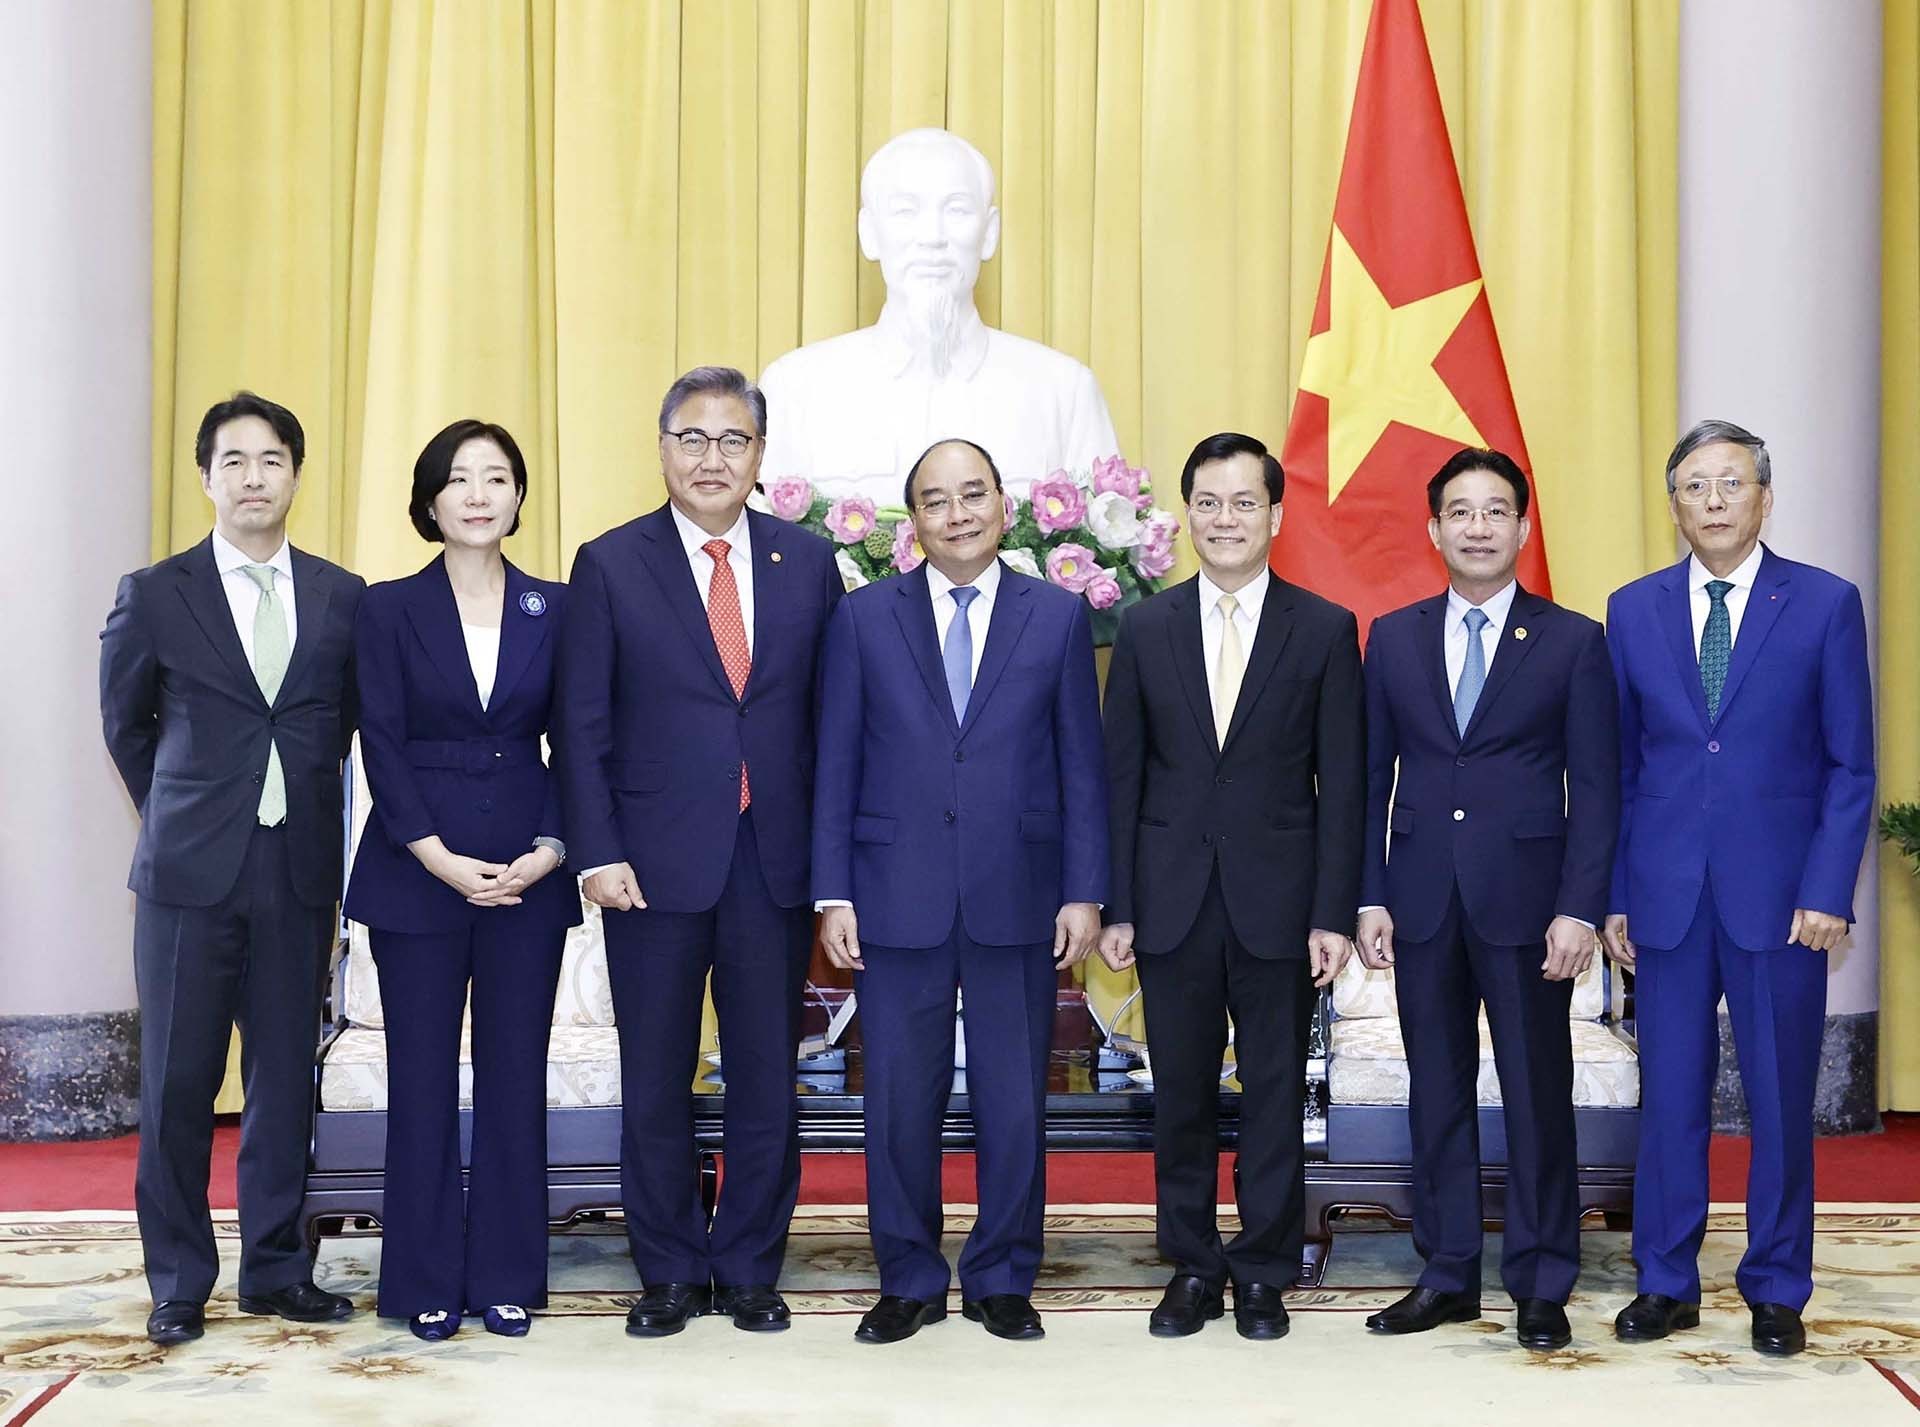 Việt Nam-Hàn Quốc: Thúc đẩy hợp tác toàn diện, thực chất, hiệu quả hơn trong 30 năm tiếp theo